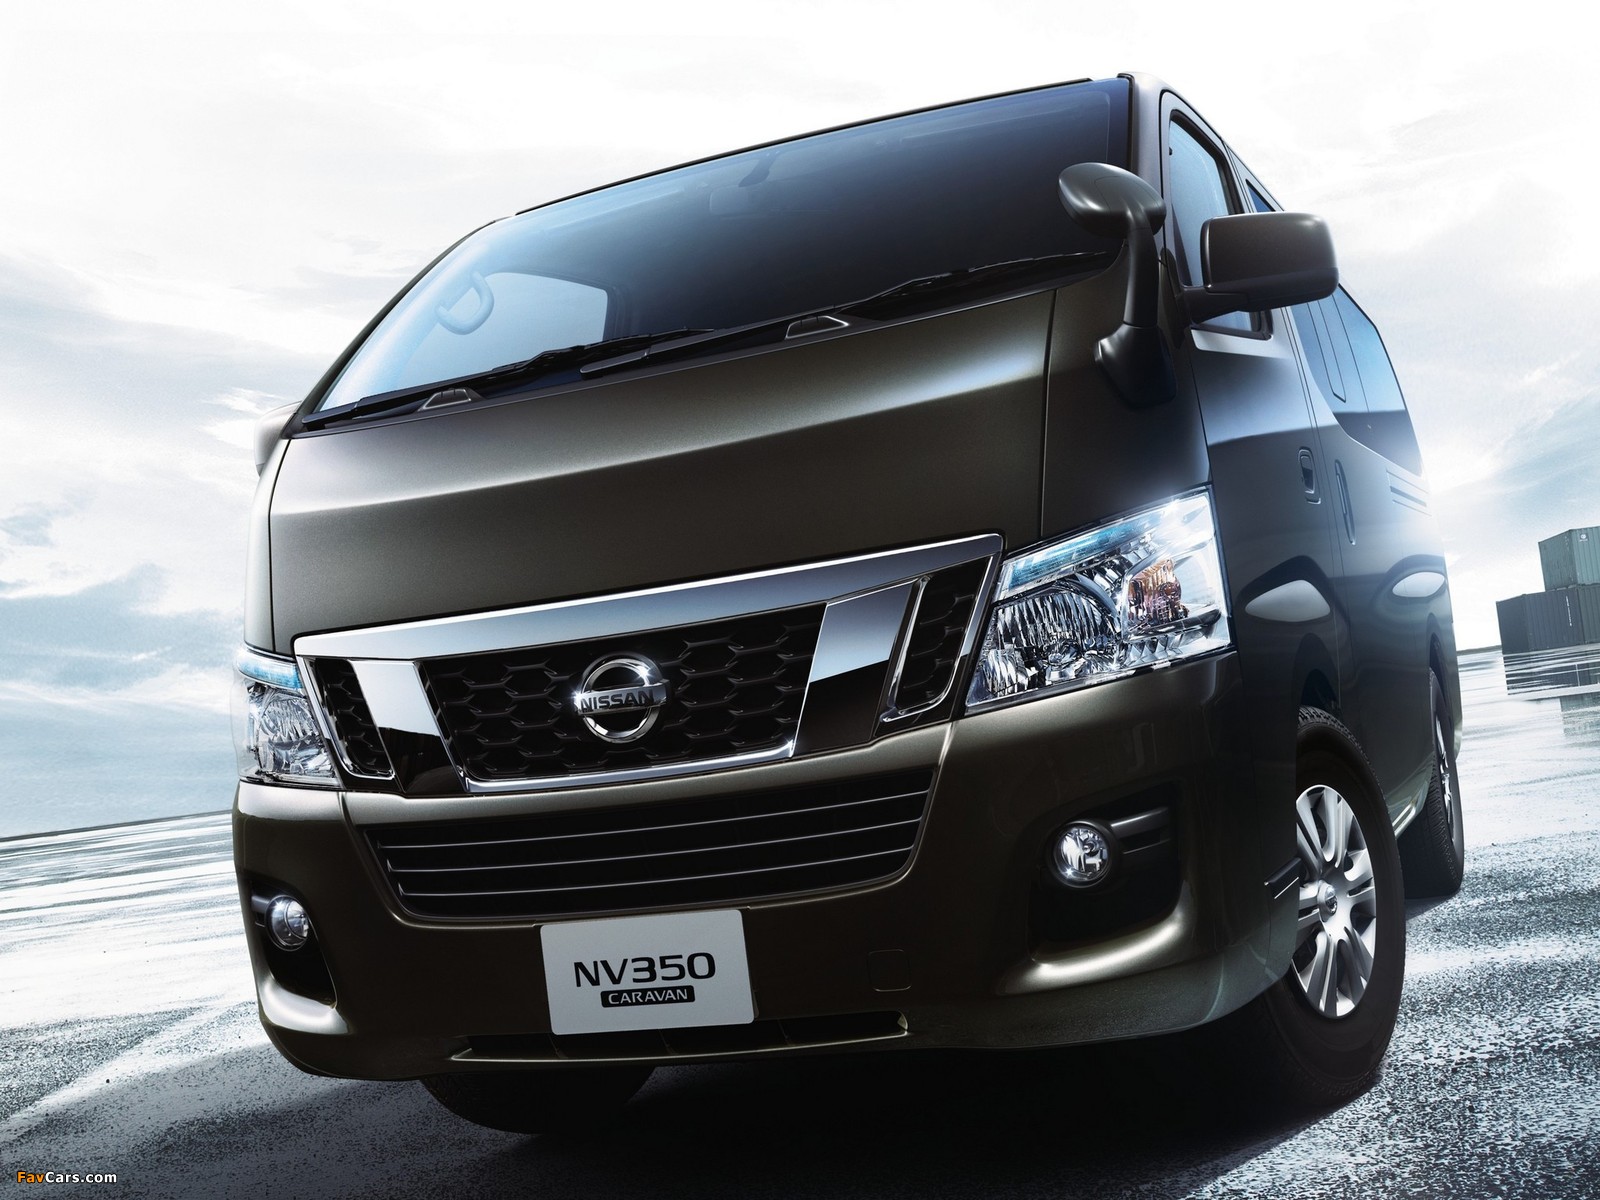 Nissan NV350 Caravan Premium GX (E26) 2012 pictures (1600 x 1200)